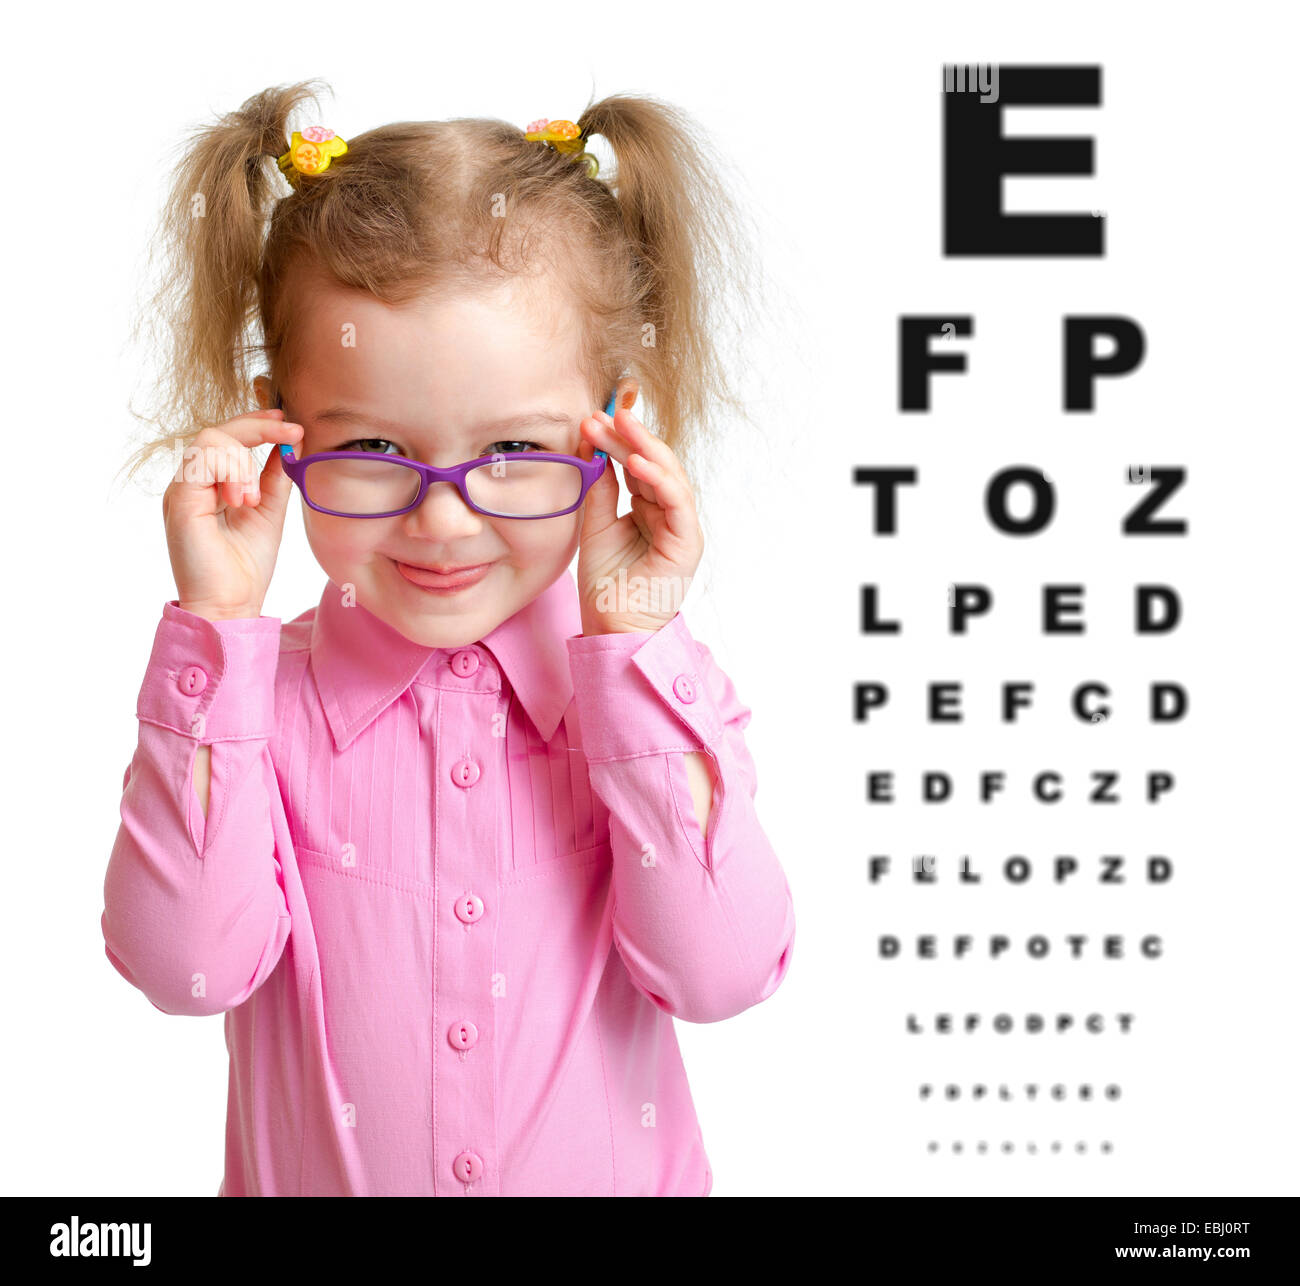 Chica sonriente poner gafas con tabla optométrica borrosas detrás de ella Foto de stock